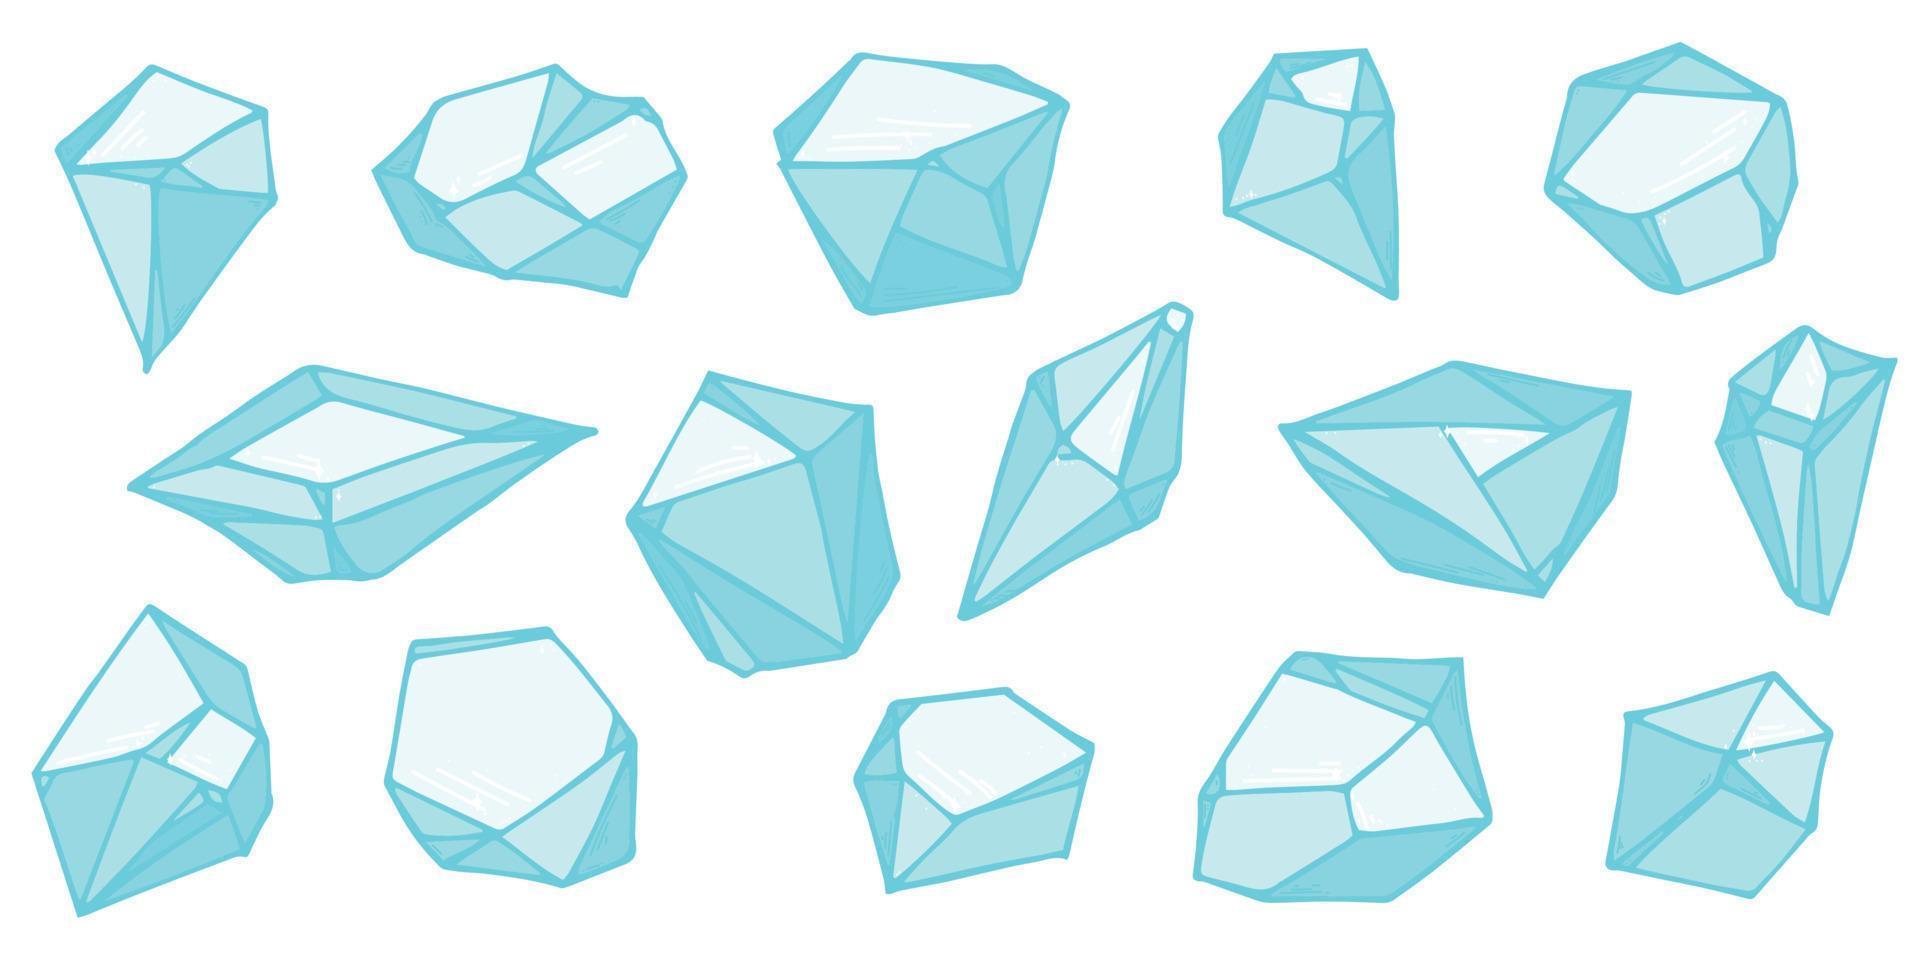 handgetekende kristallen set. geometrische edelstenen diamanten vector illustraties collectie. kleurrijke scherf van glas. voor geologie, juwelier, decoratie, spel, web.